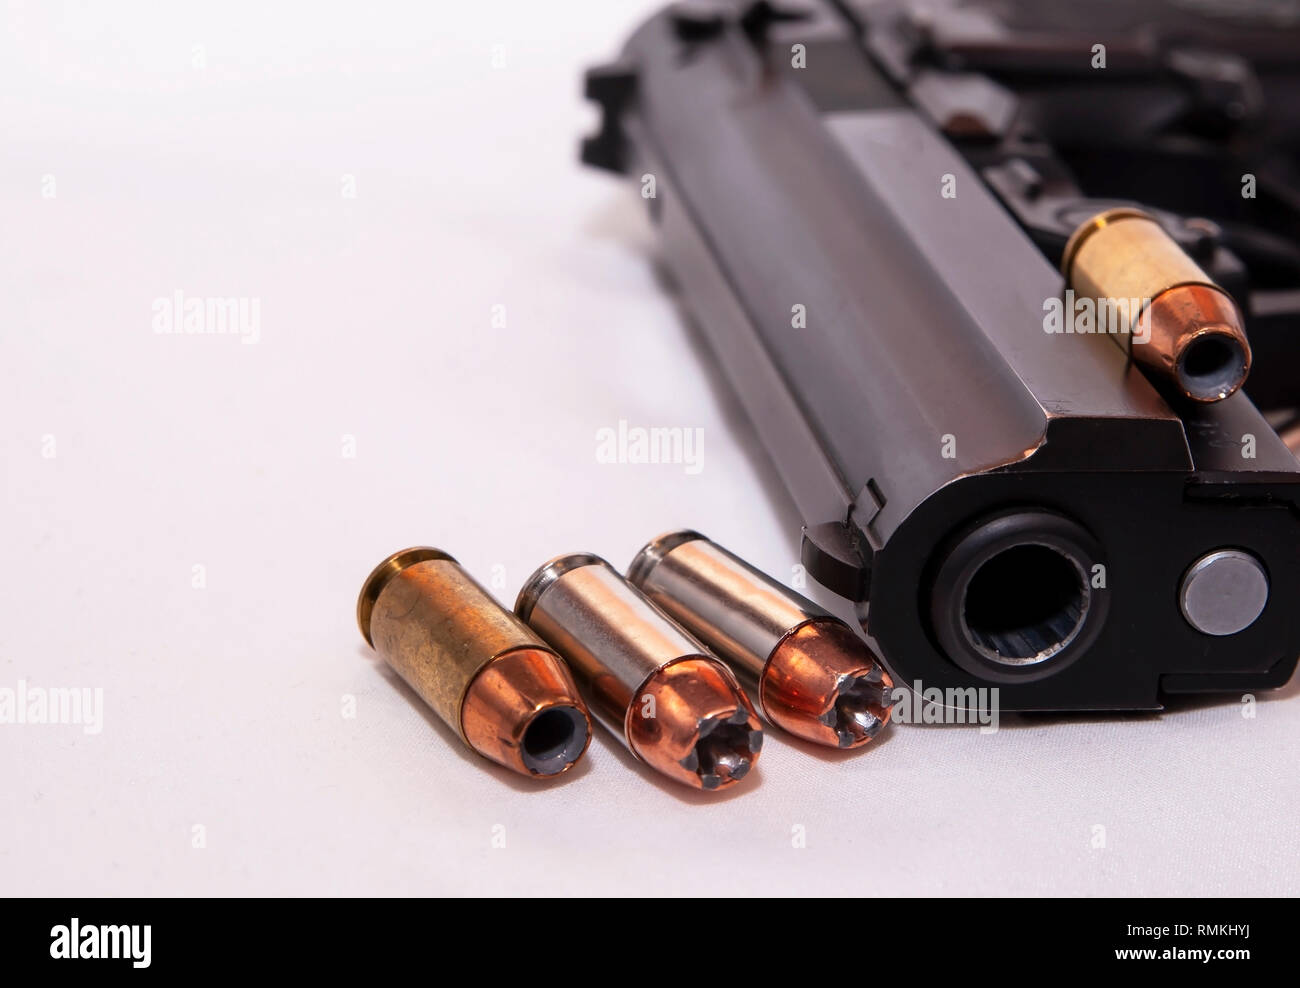 Eine schwarze 40 Kaliber Pistole mit vier 40 Kaliber hollow point Kugeln auf weißem Hintergrund Stockfoto